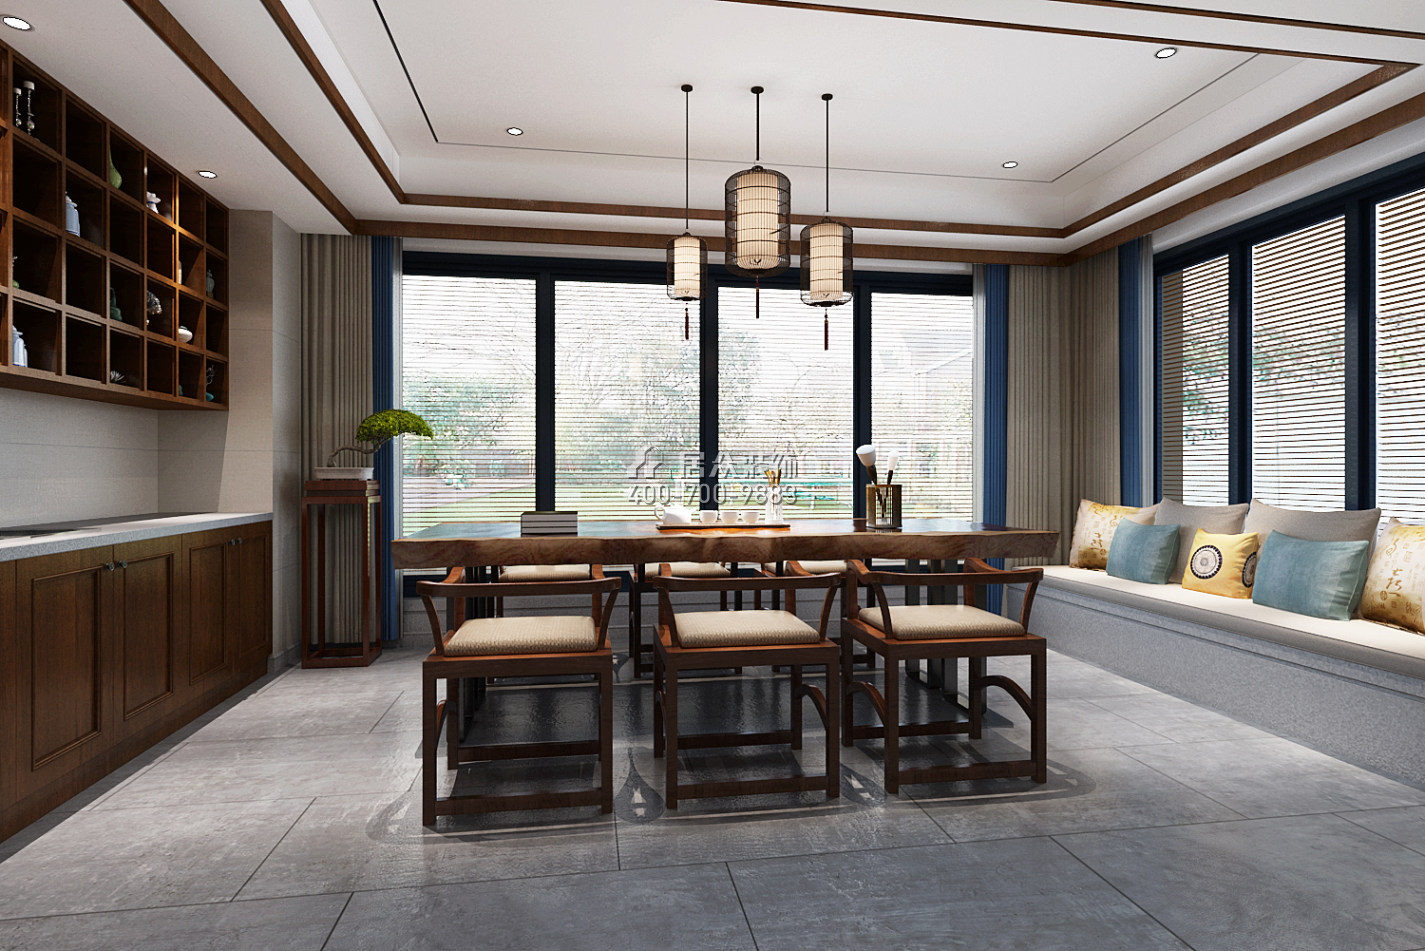 天利天鹅湾420平方米中式风格别墅户型茶室装修效果图